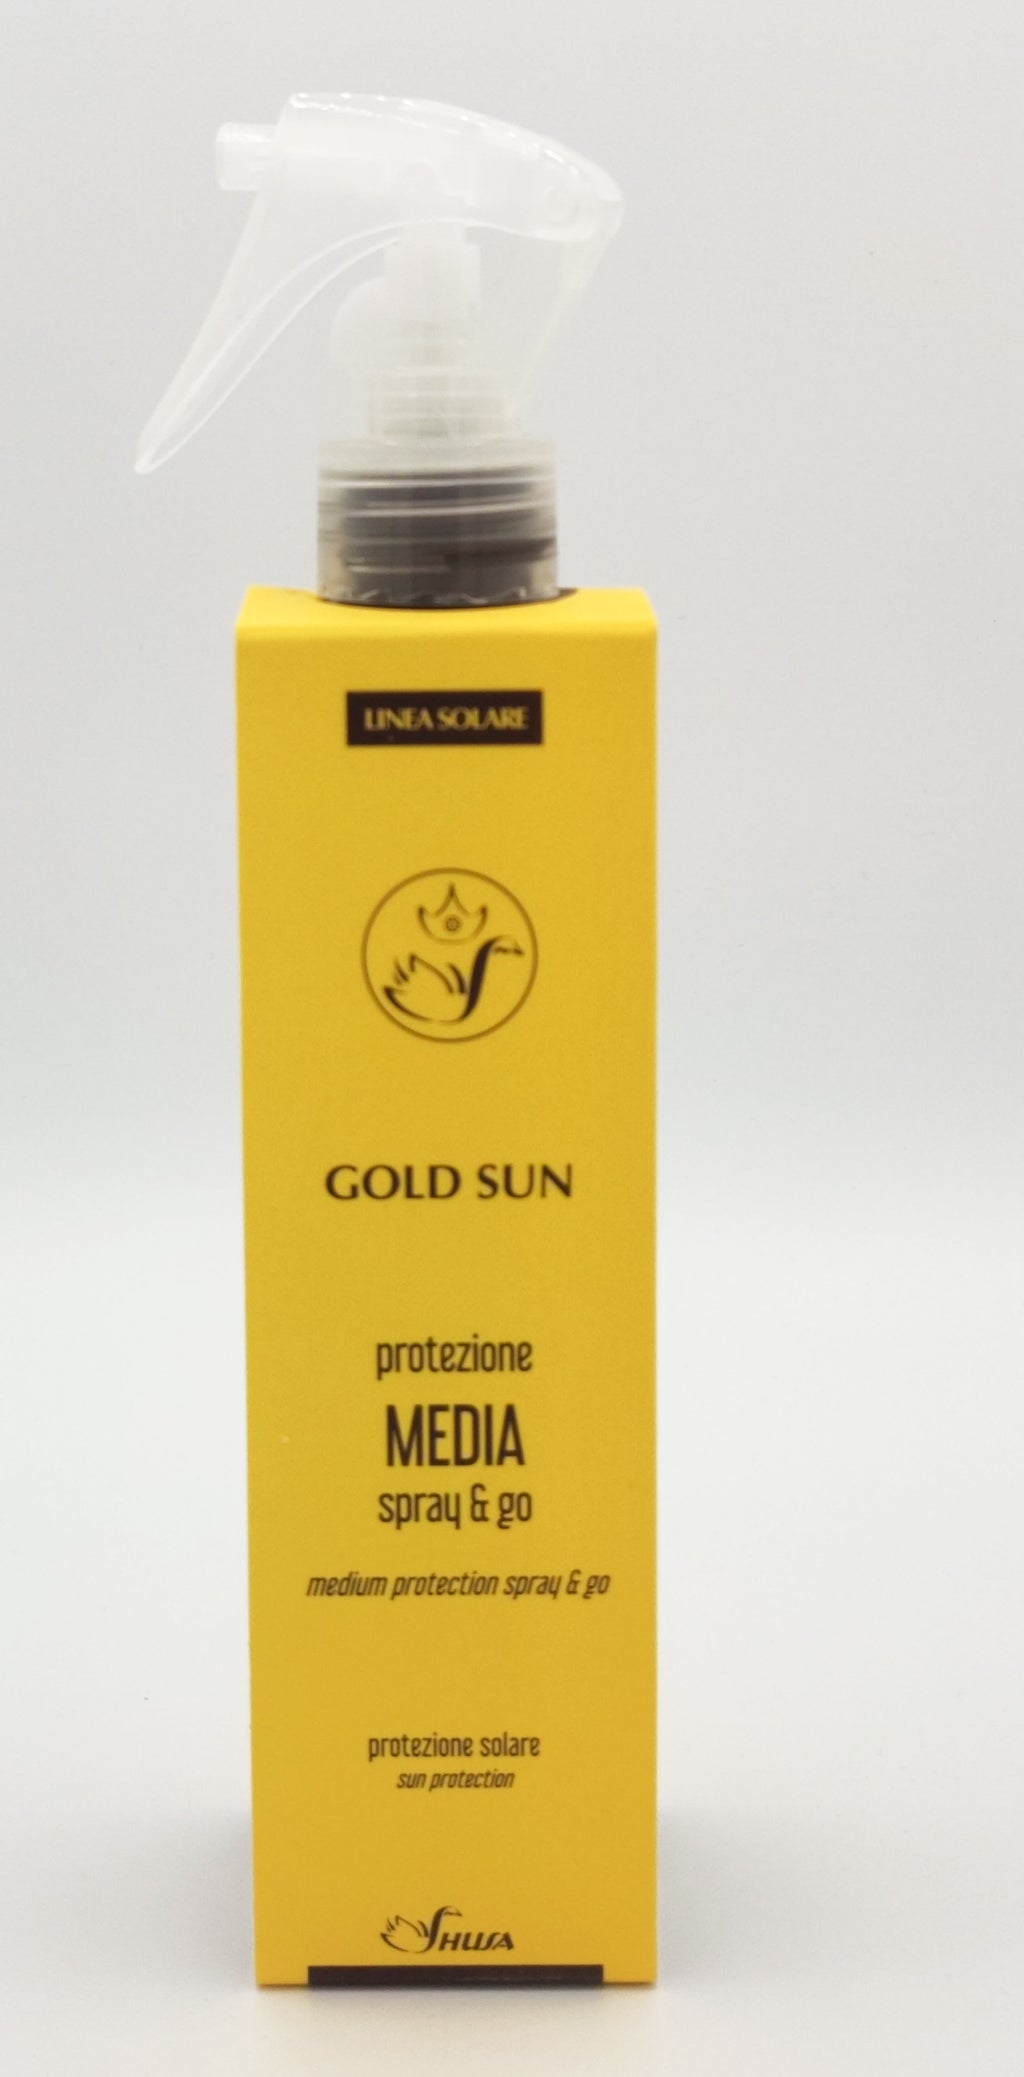 Gold sun - Protezione Media Spray & Go  200ml